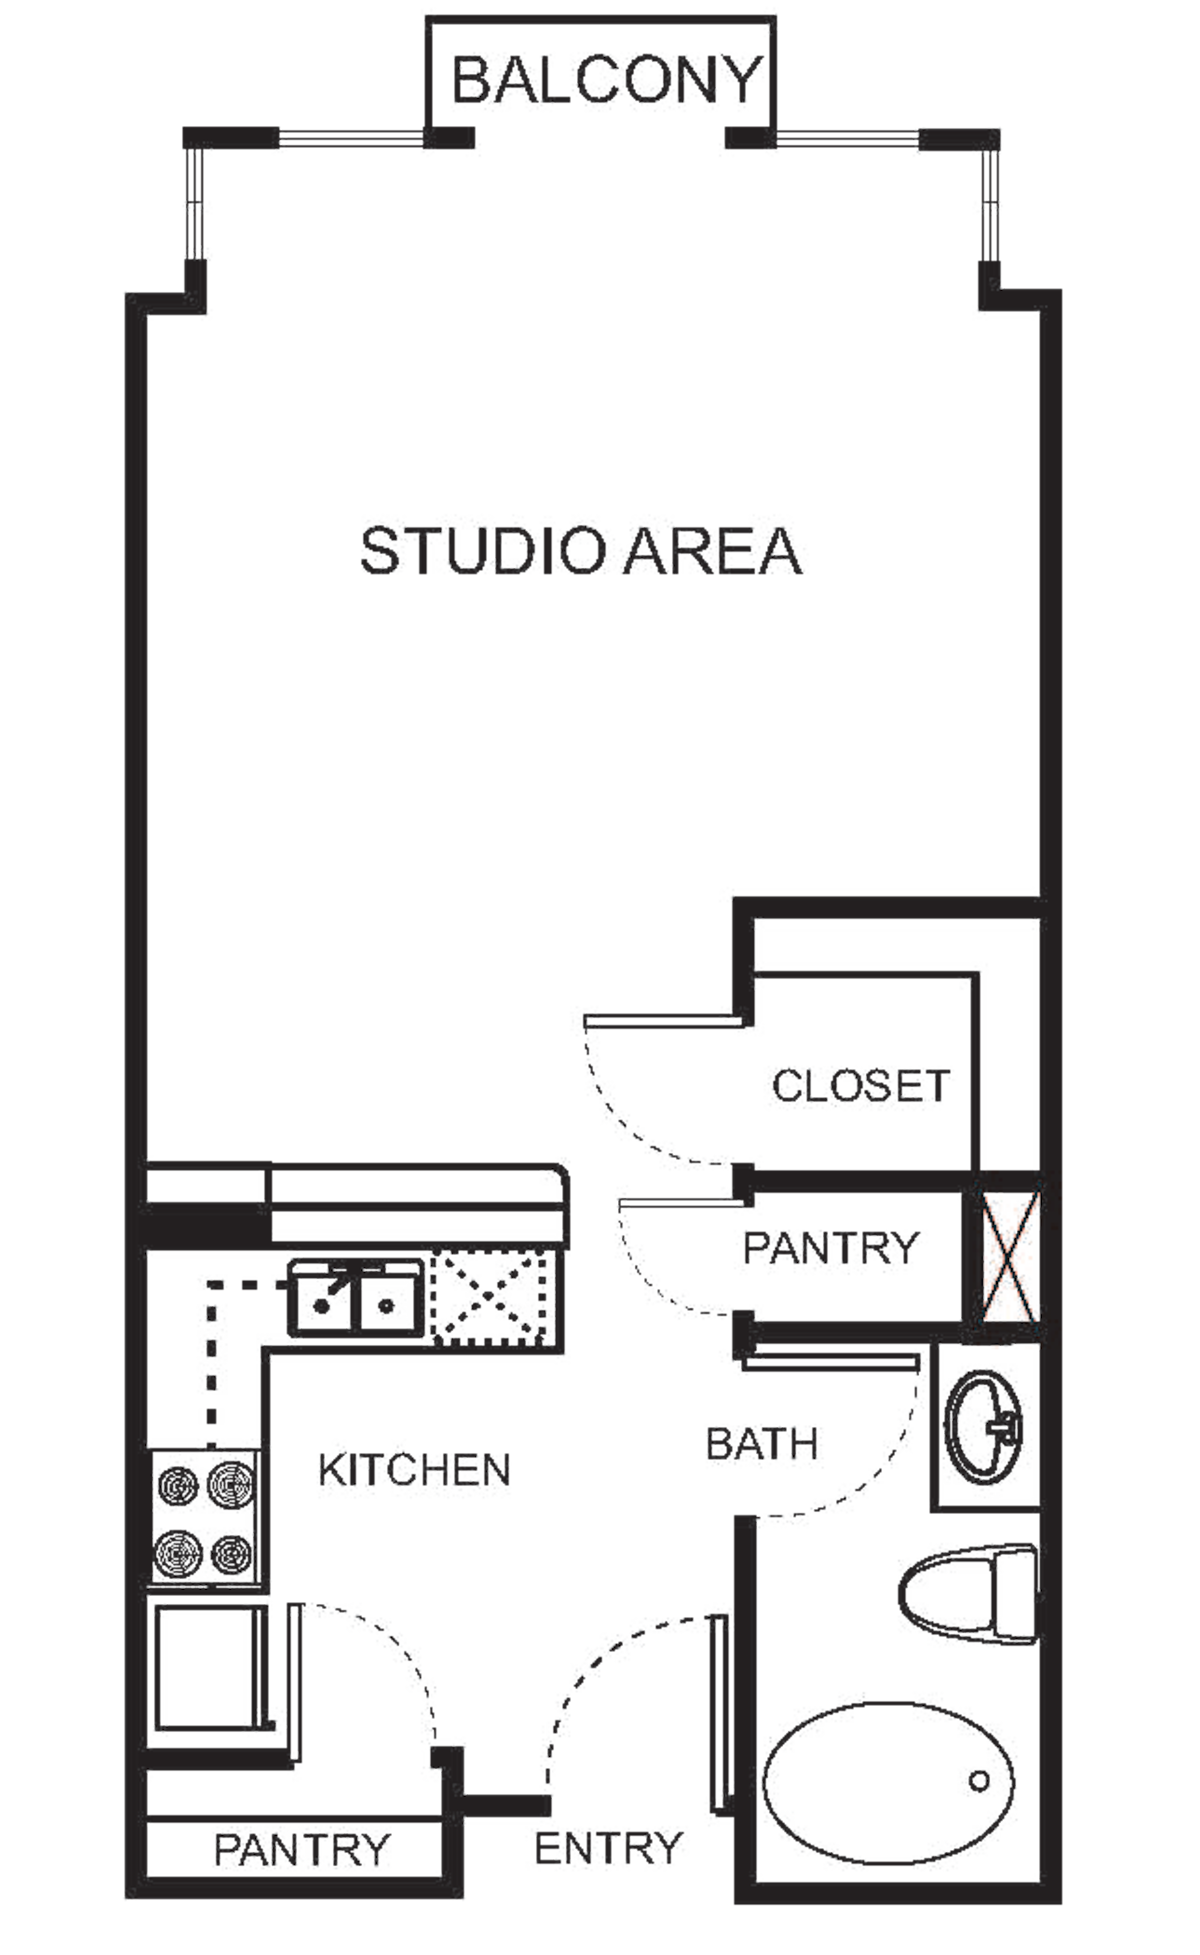 Floorplan diagram for S0 Studio Harmony, showing Studio